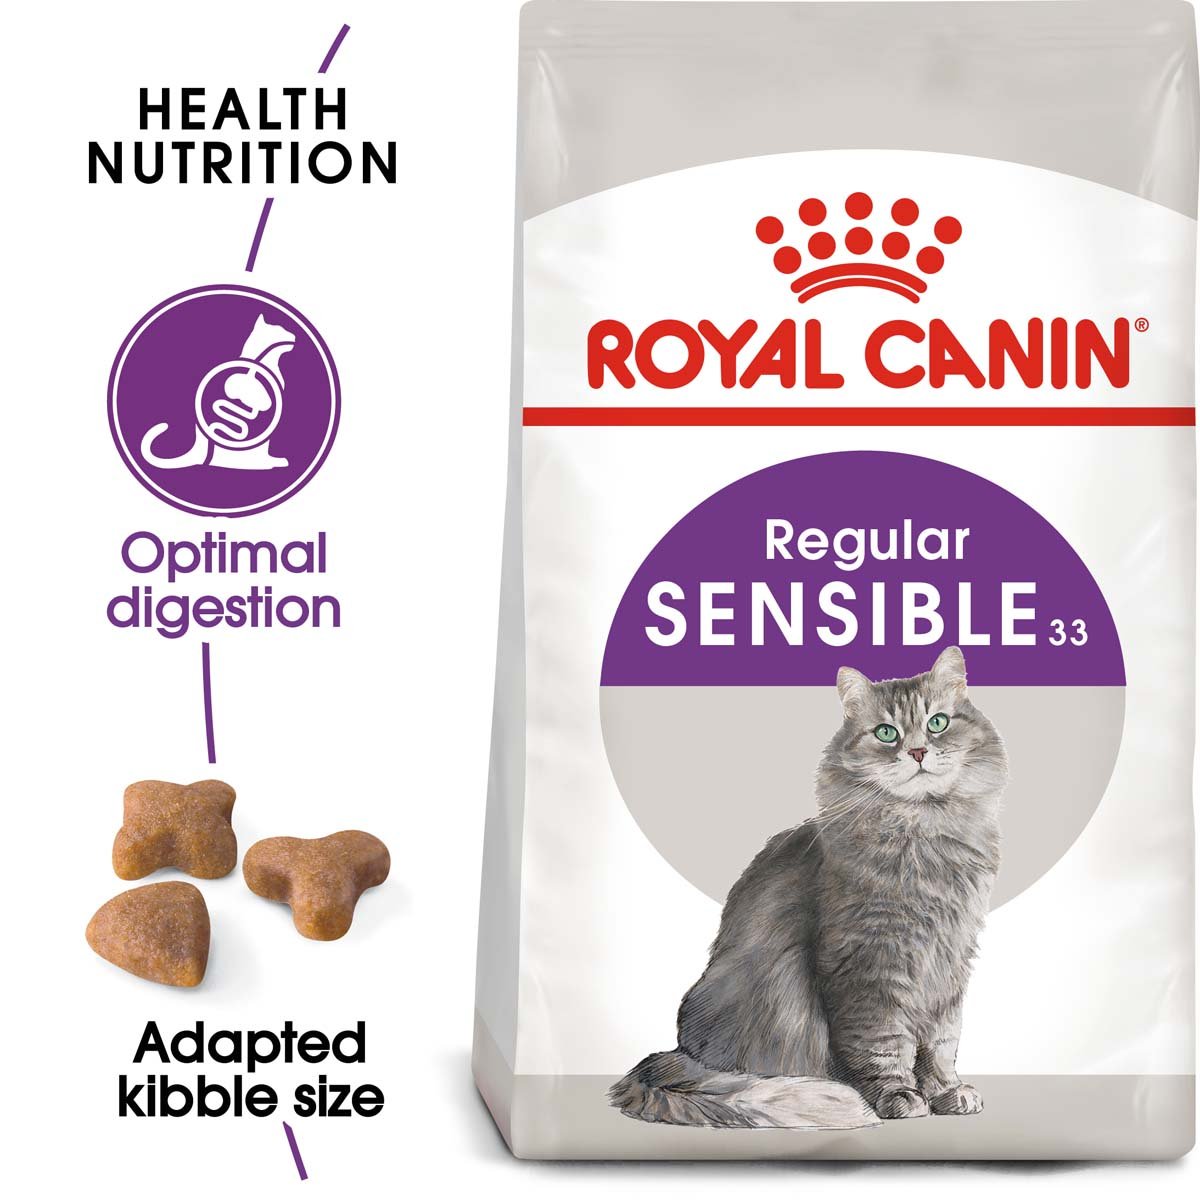 ROYAL CANIN SENSIBLE Trockenfutter für sensible Katzen 2x10kg – mit 21% Rabatt günstig kaufen